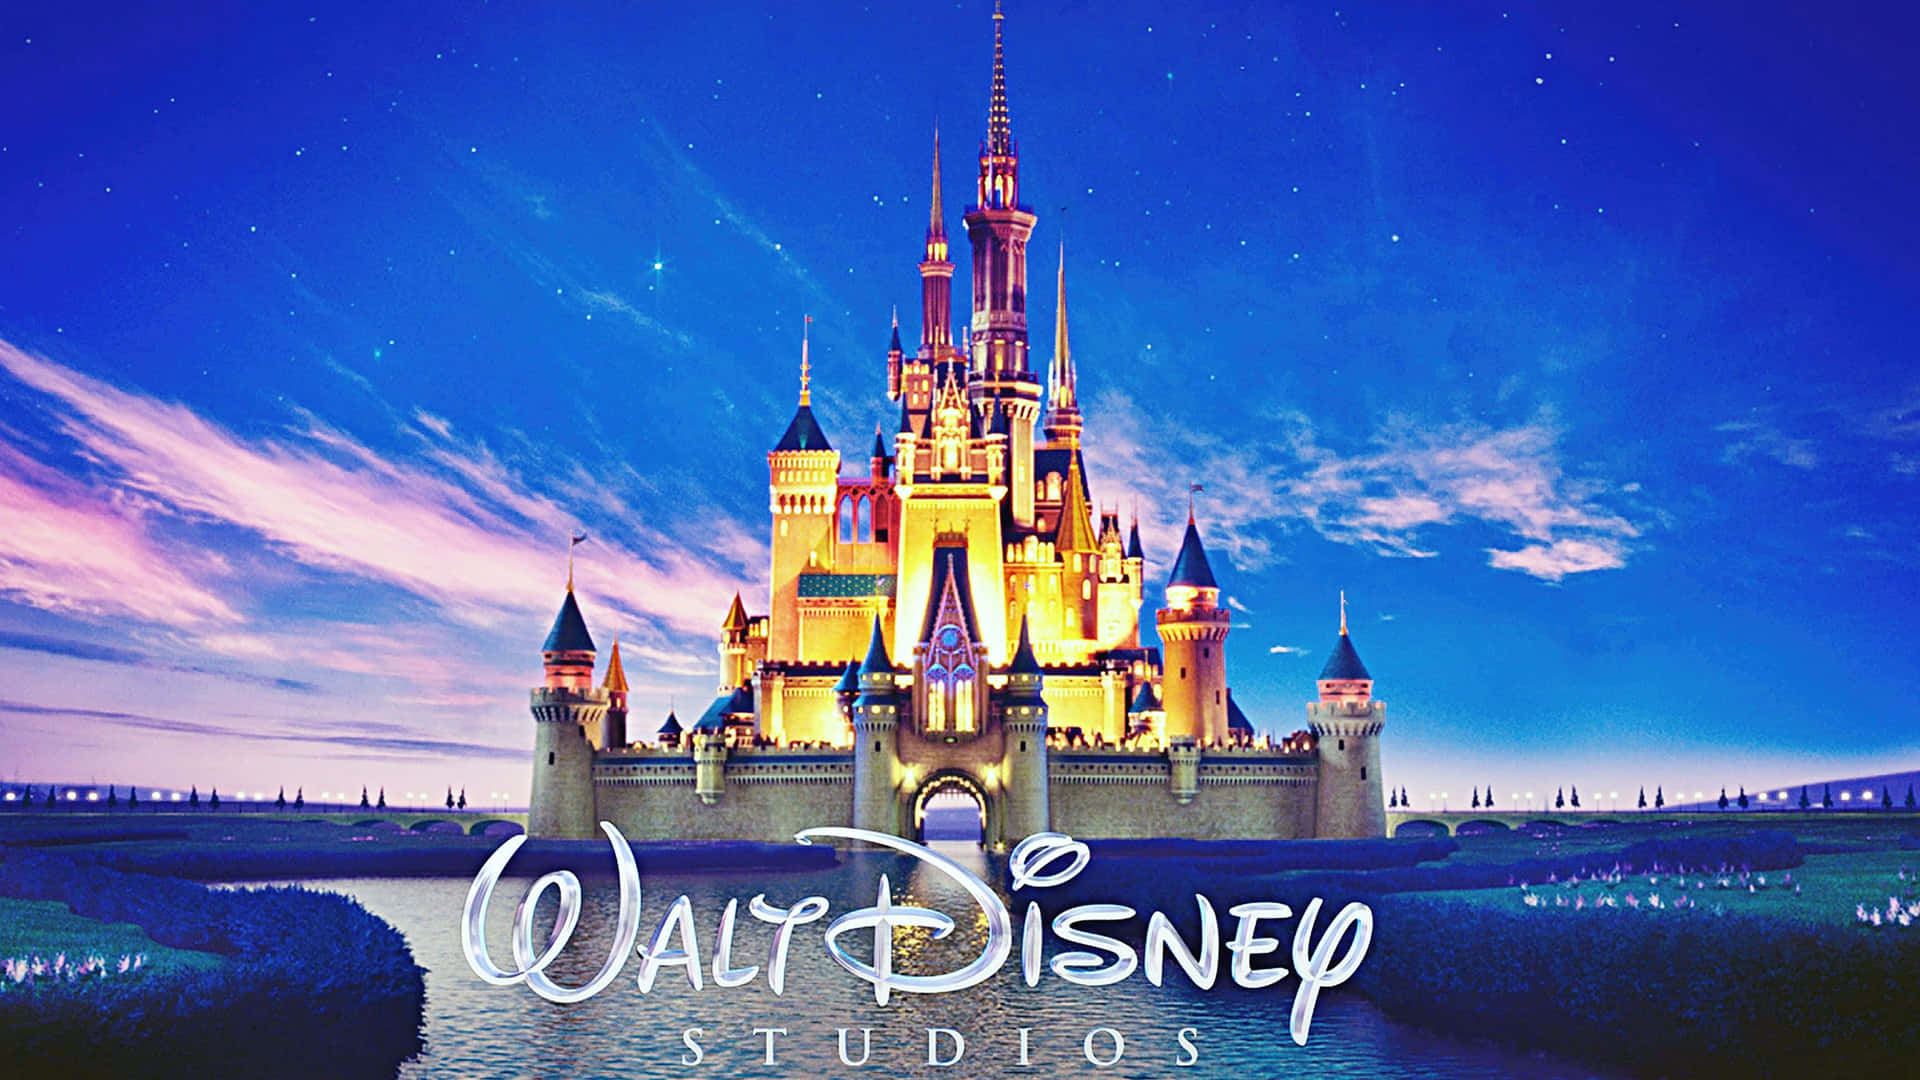 Udforsk Disney-verden med fantastiske historier!